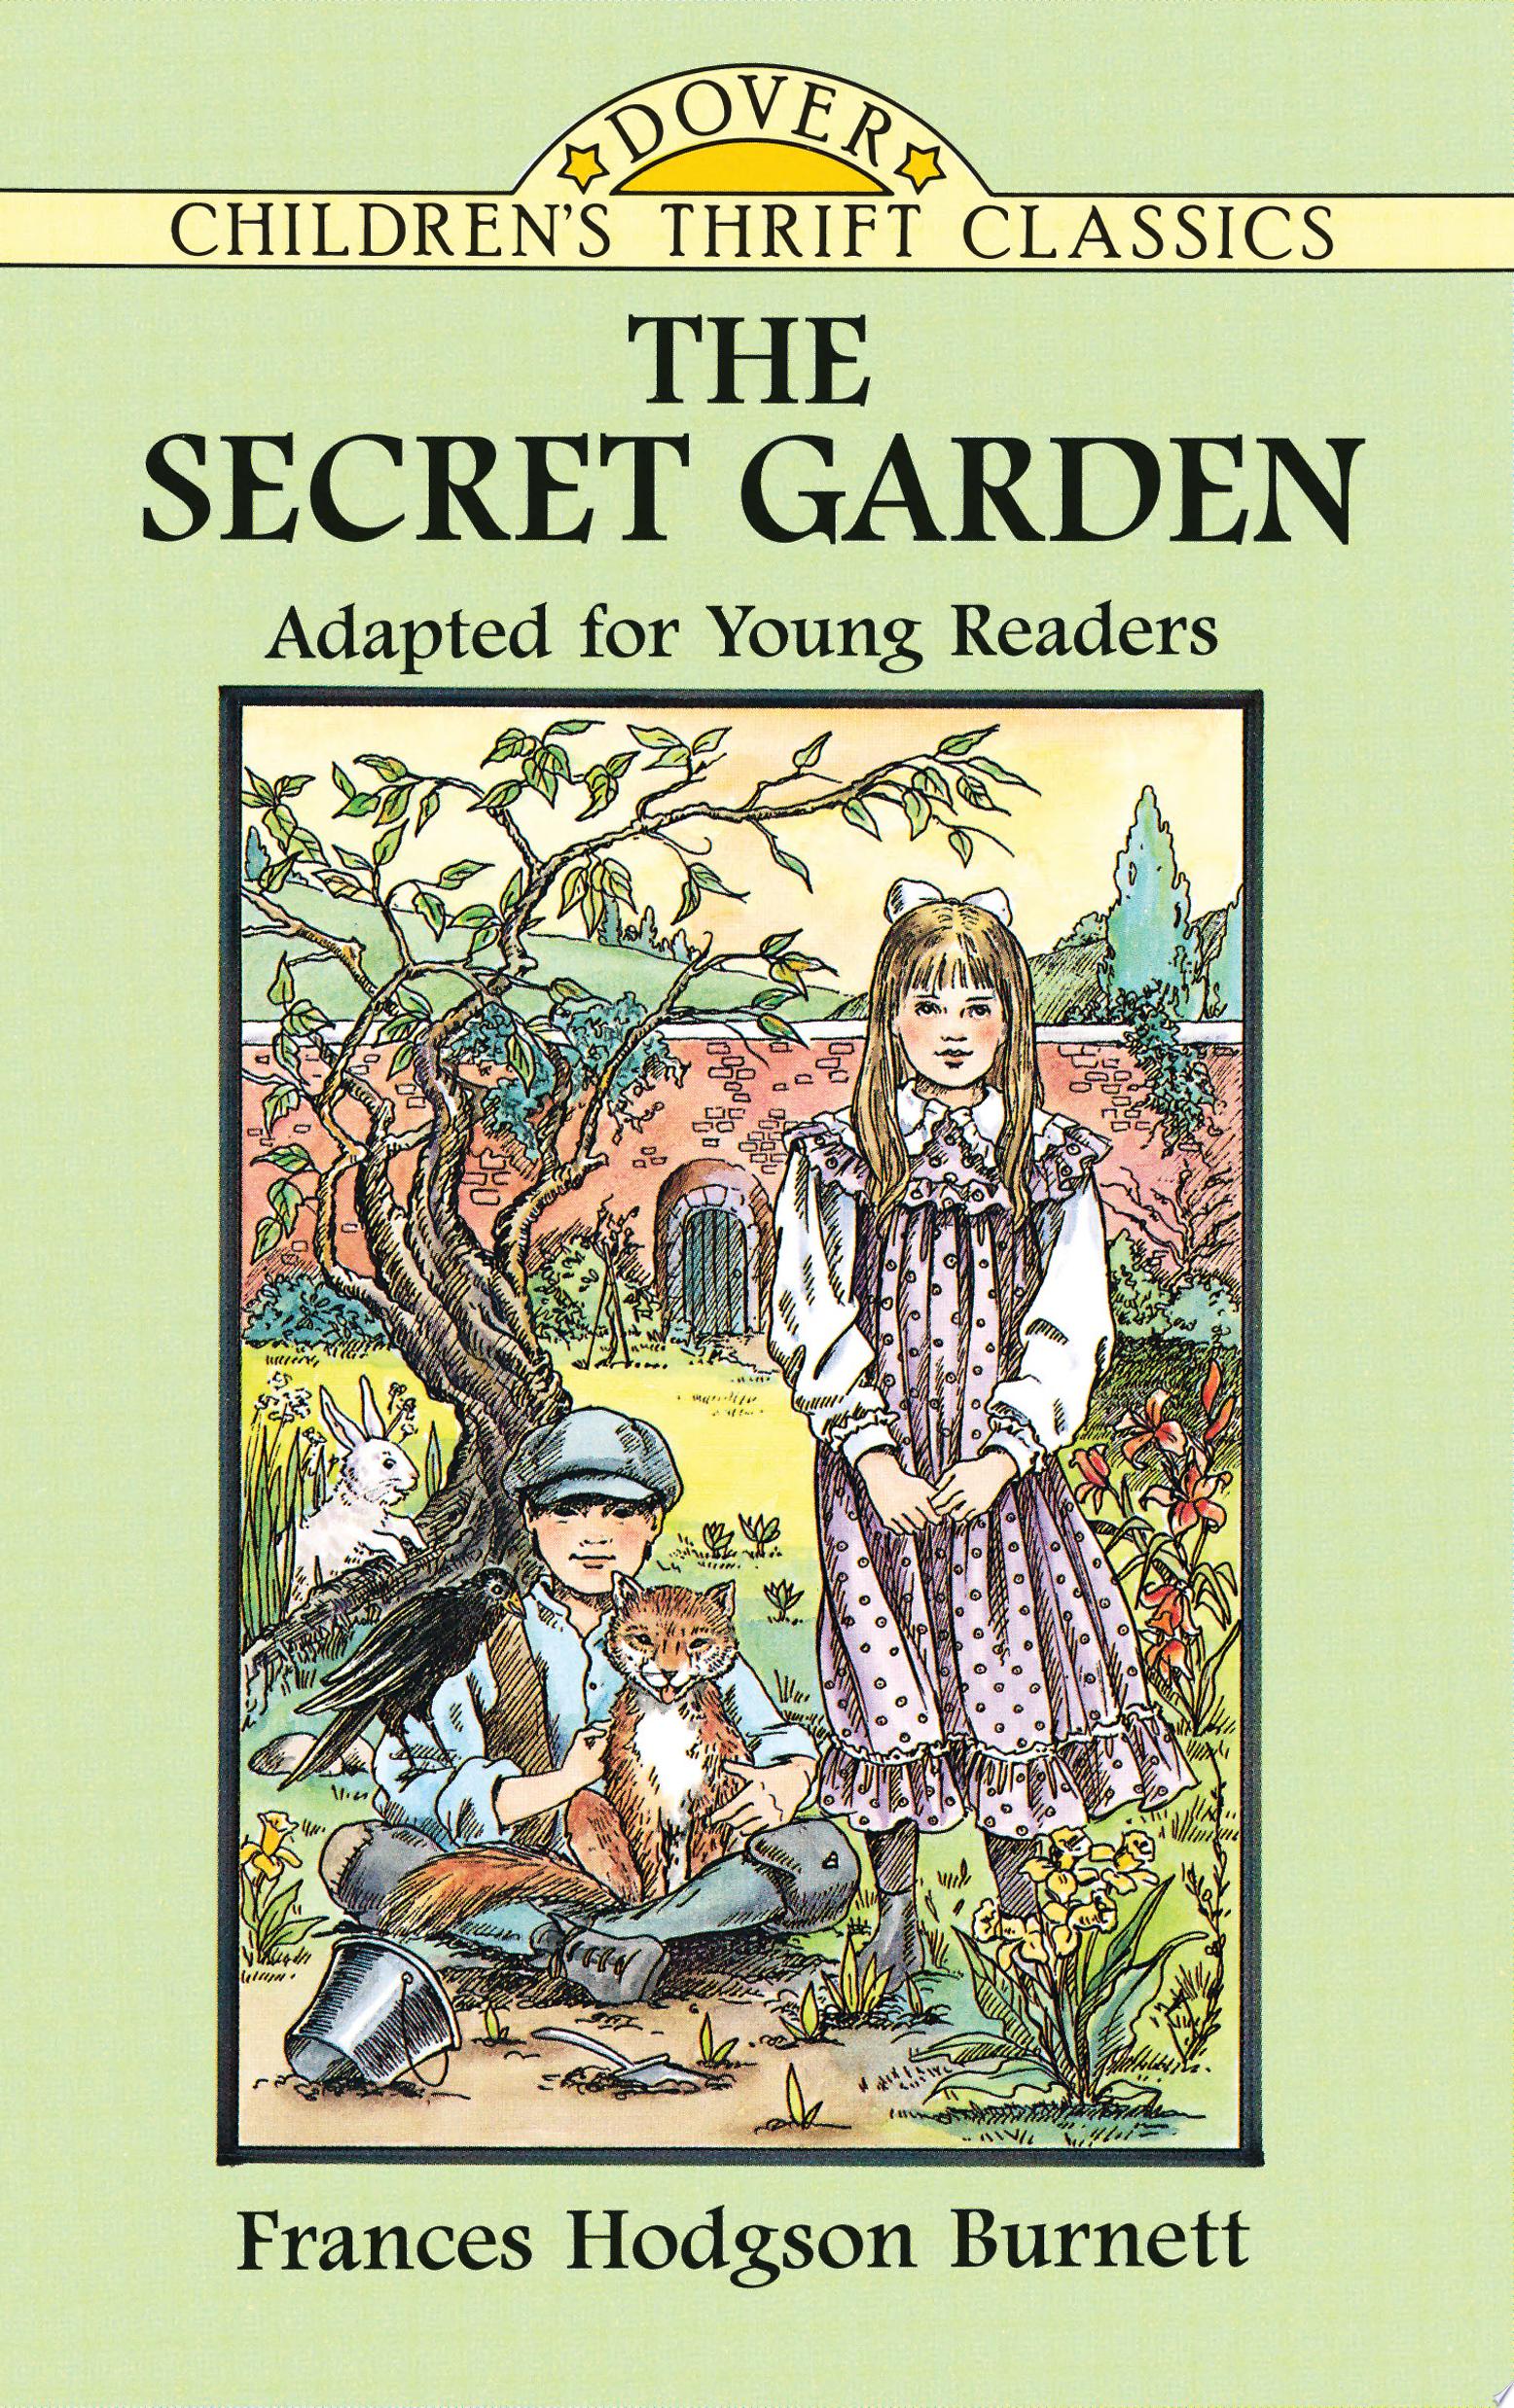 Image for "The Secret Garden"